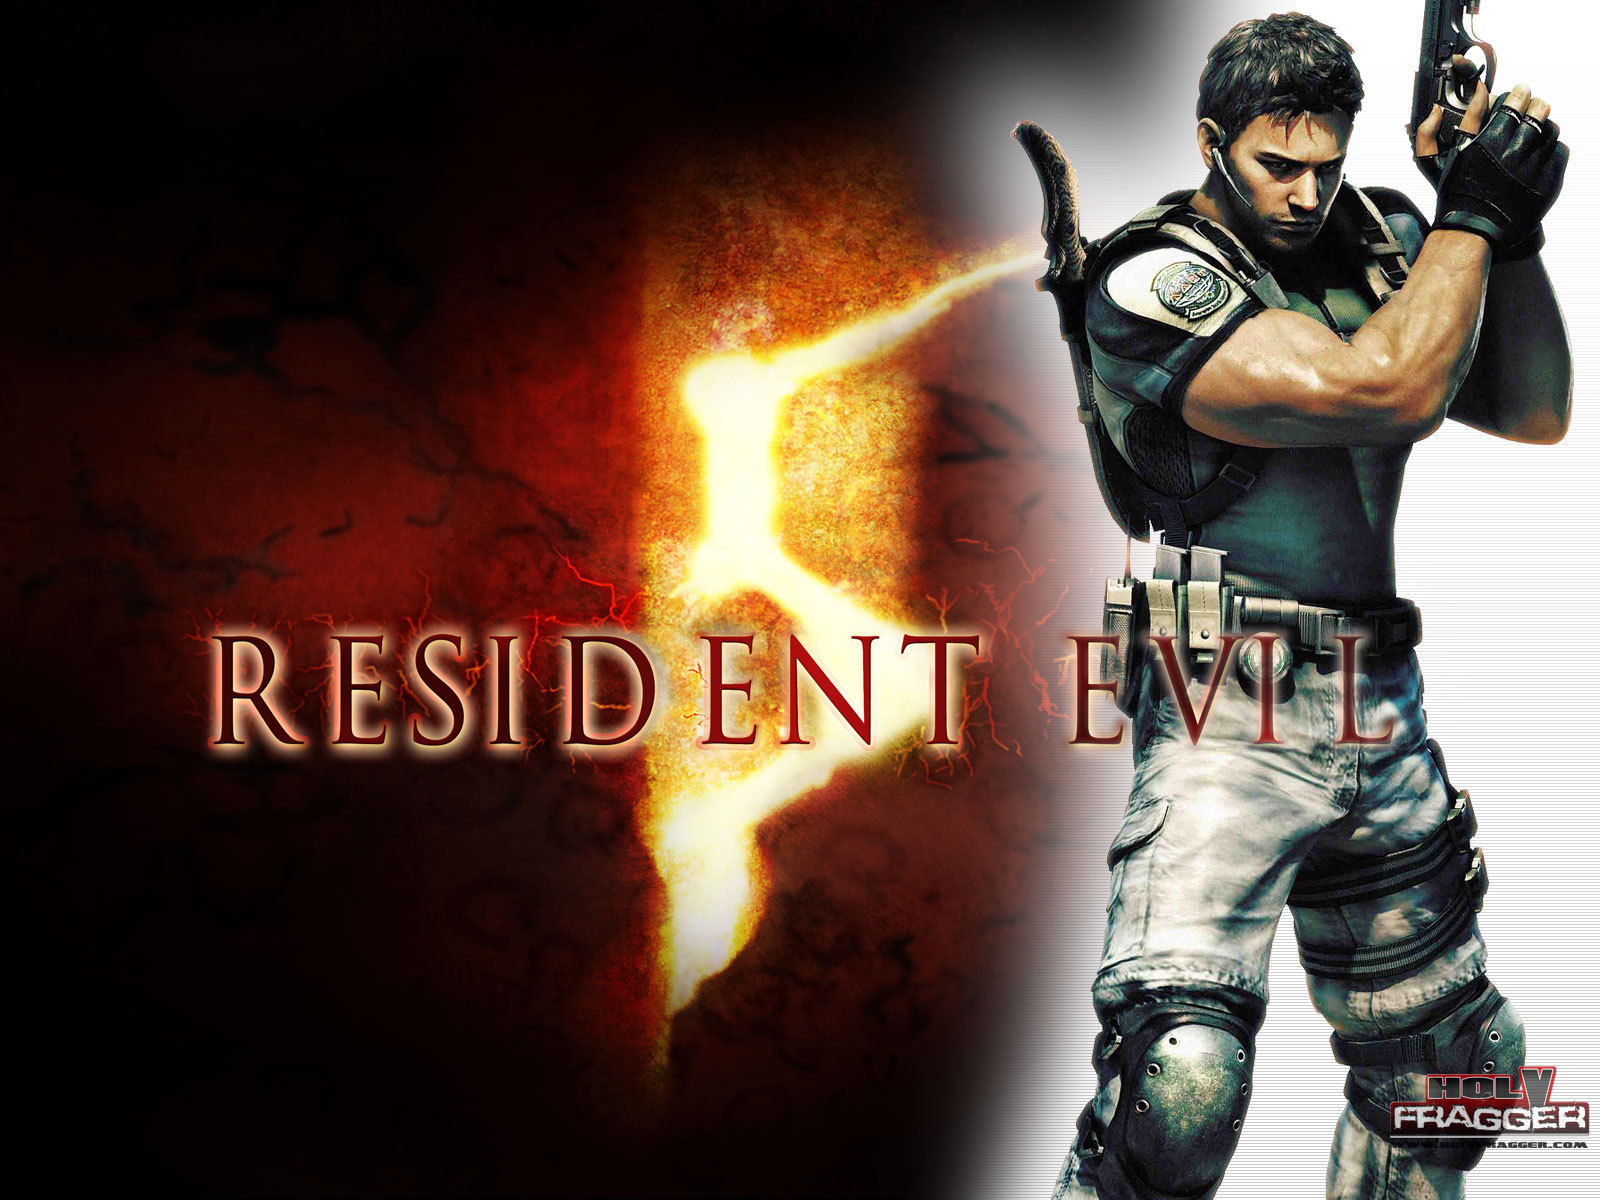 Resident evil 5 ocean of games